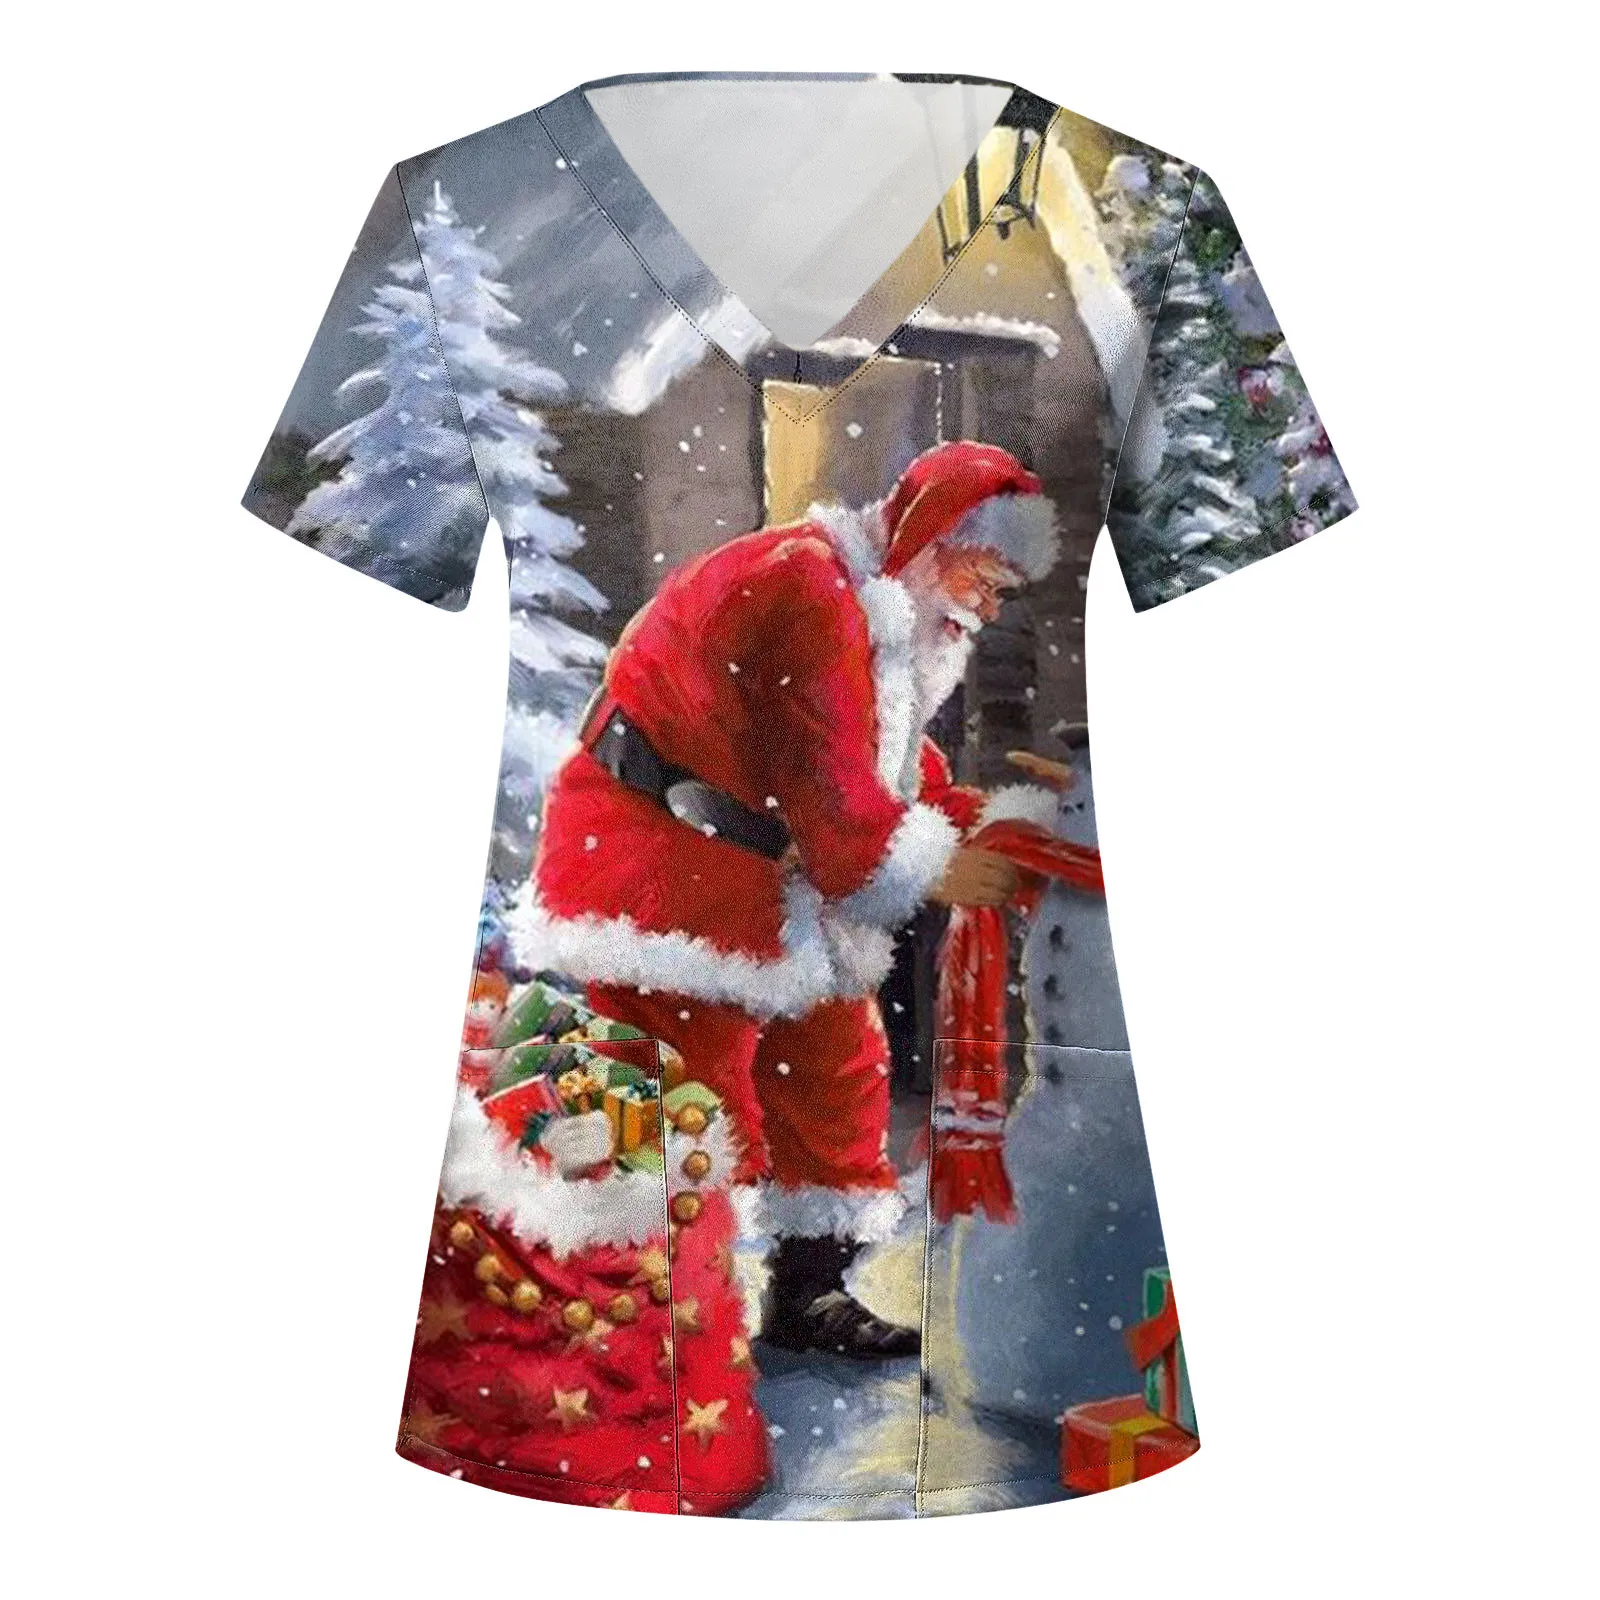 

Рождественские скрабы для кормления, топы, Женская рабочая форма с принтом Санты, блузка с коротким рукавом и V-образным вырезом, Униформа, медсестры